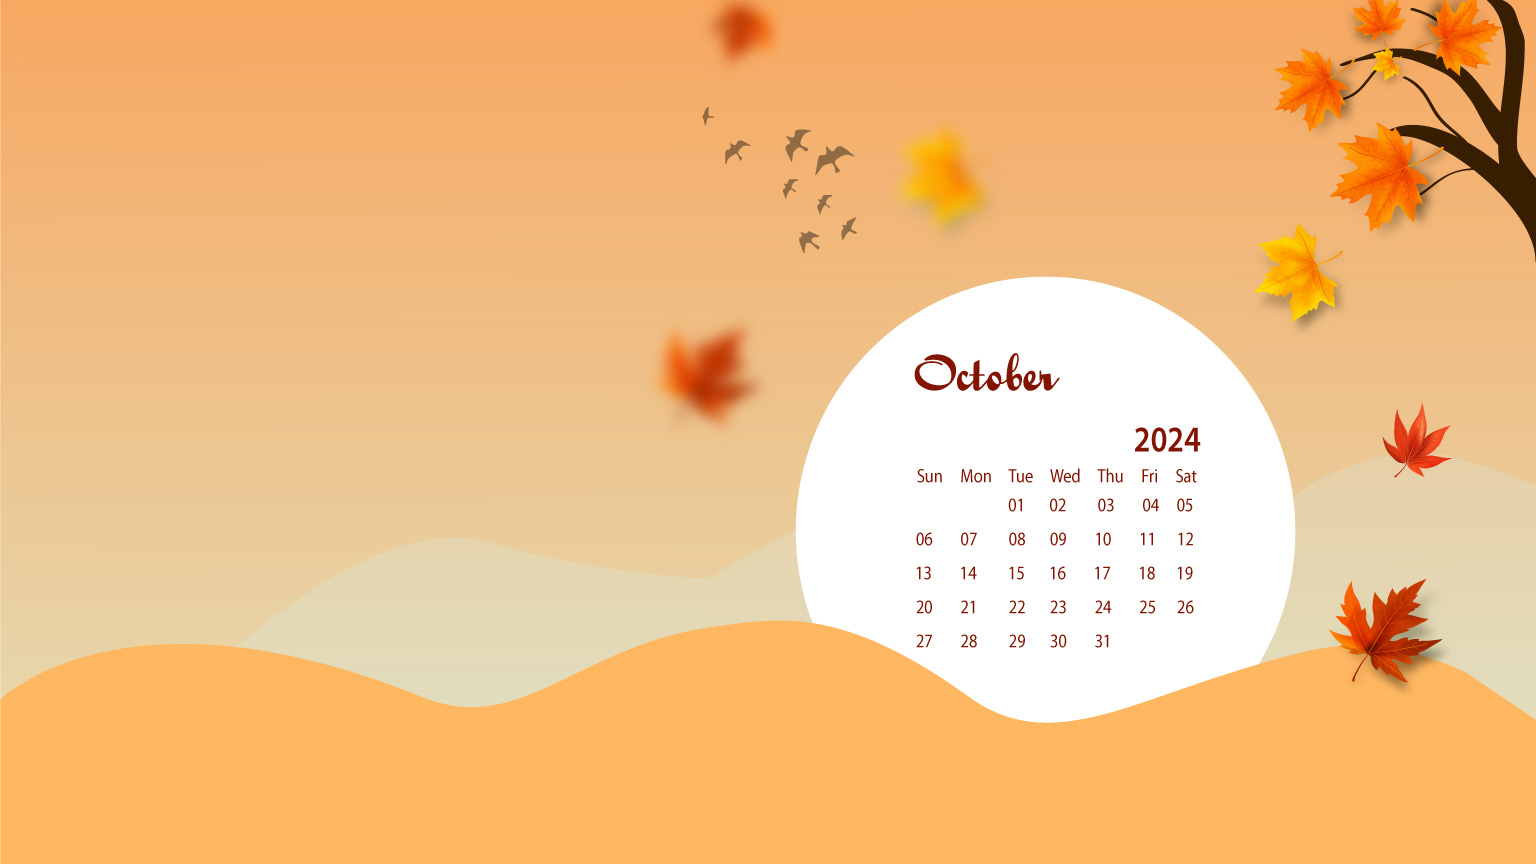 October 2024 Desktop Wallpaper Calendar - Calendarlabs | Free Printable Calendar 2024 Calendarlabs